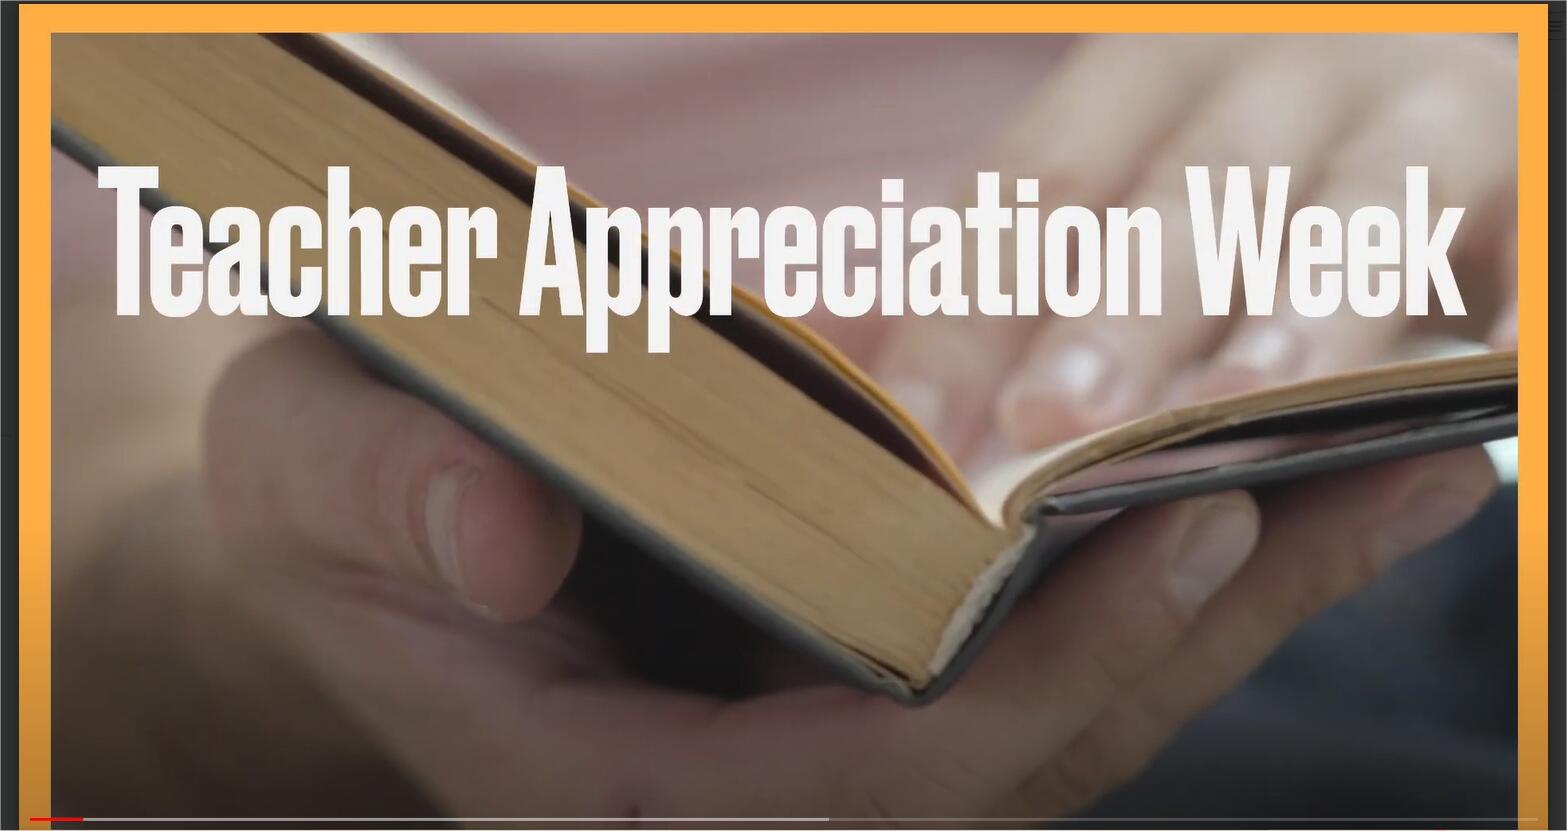 STHS Teacher Appreciation Week Video